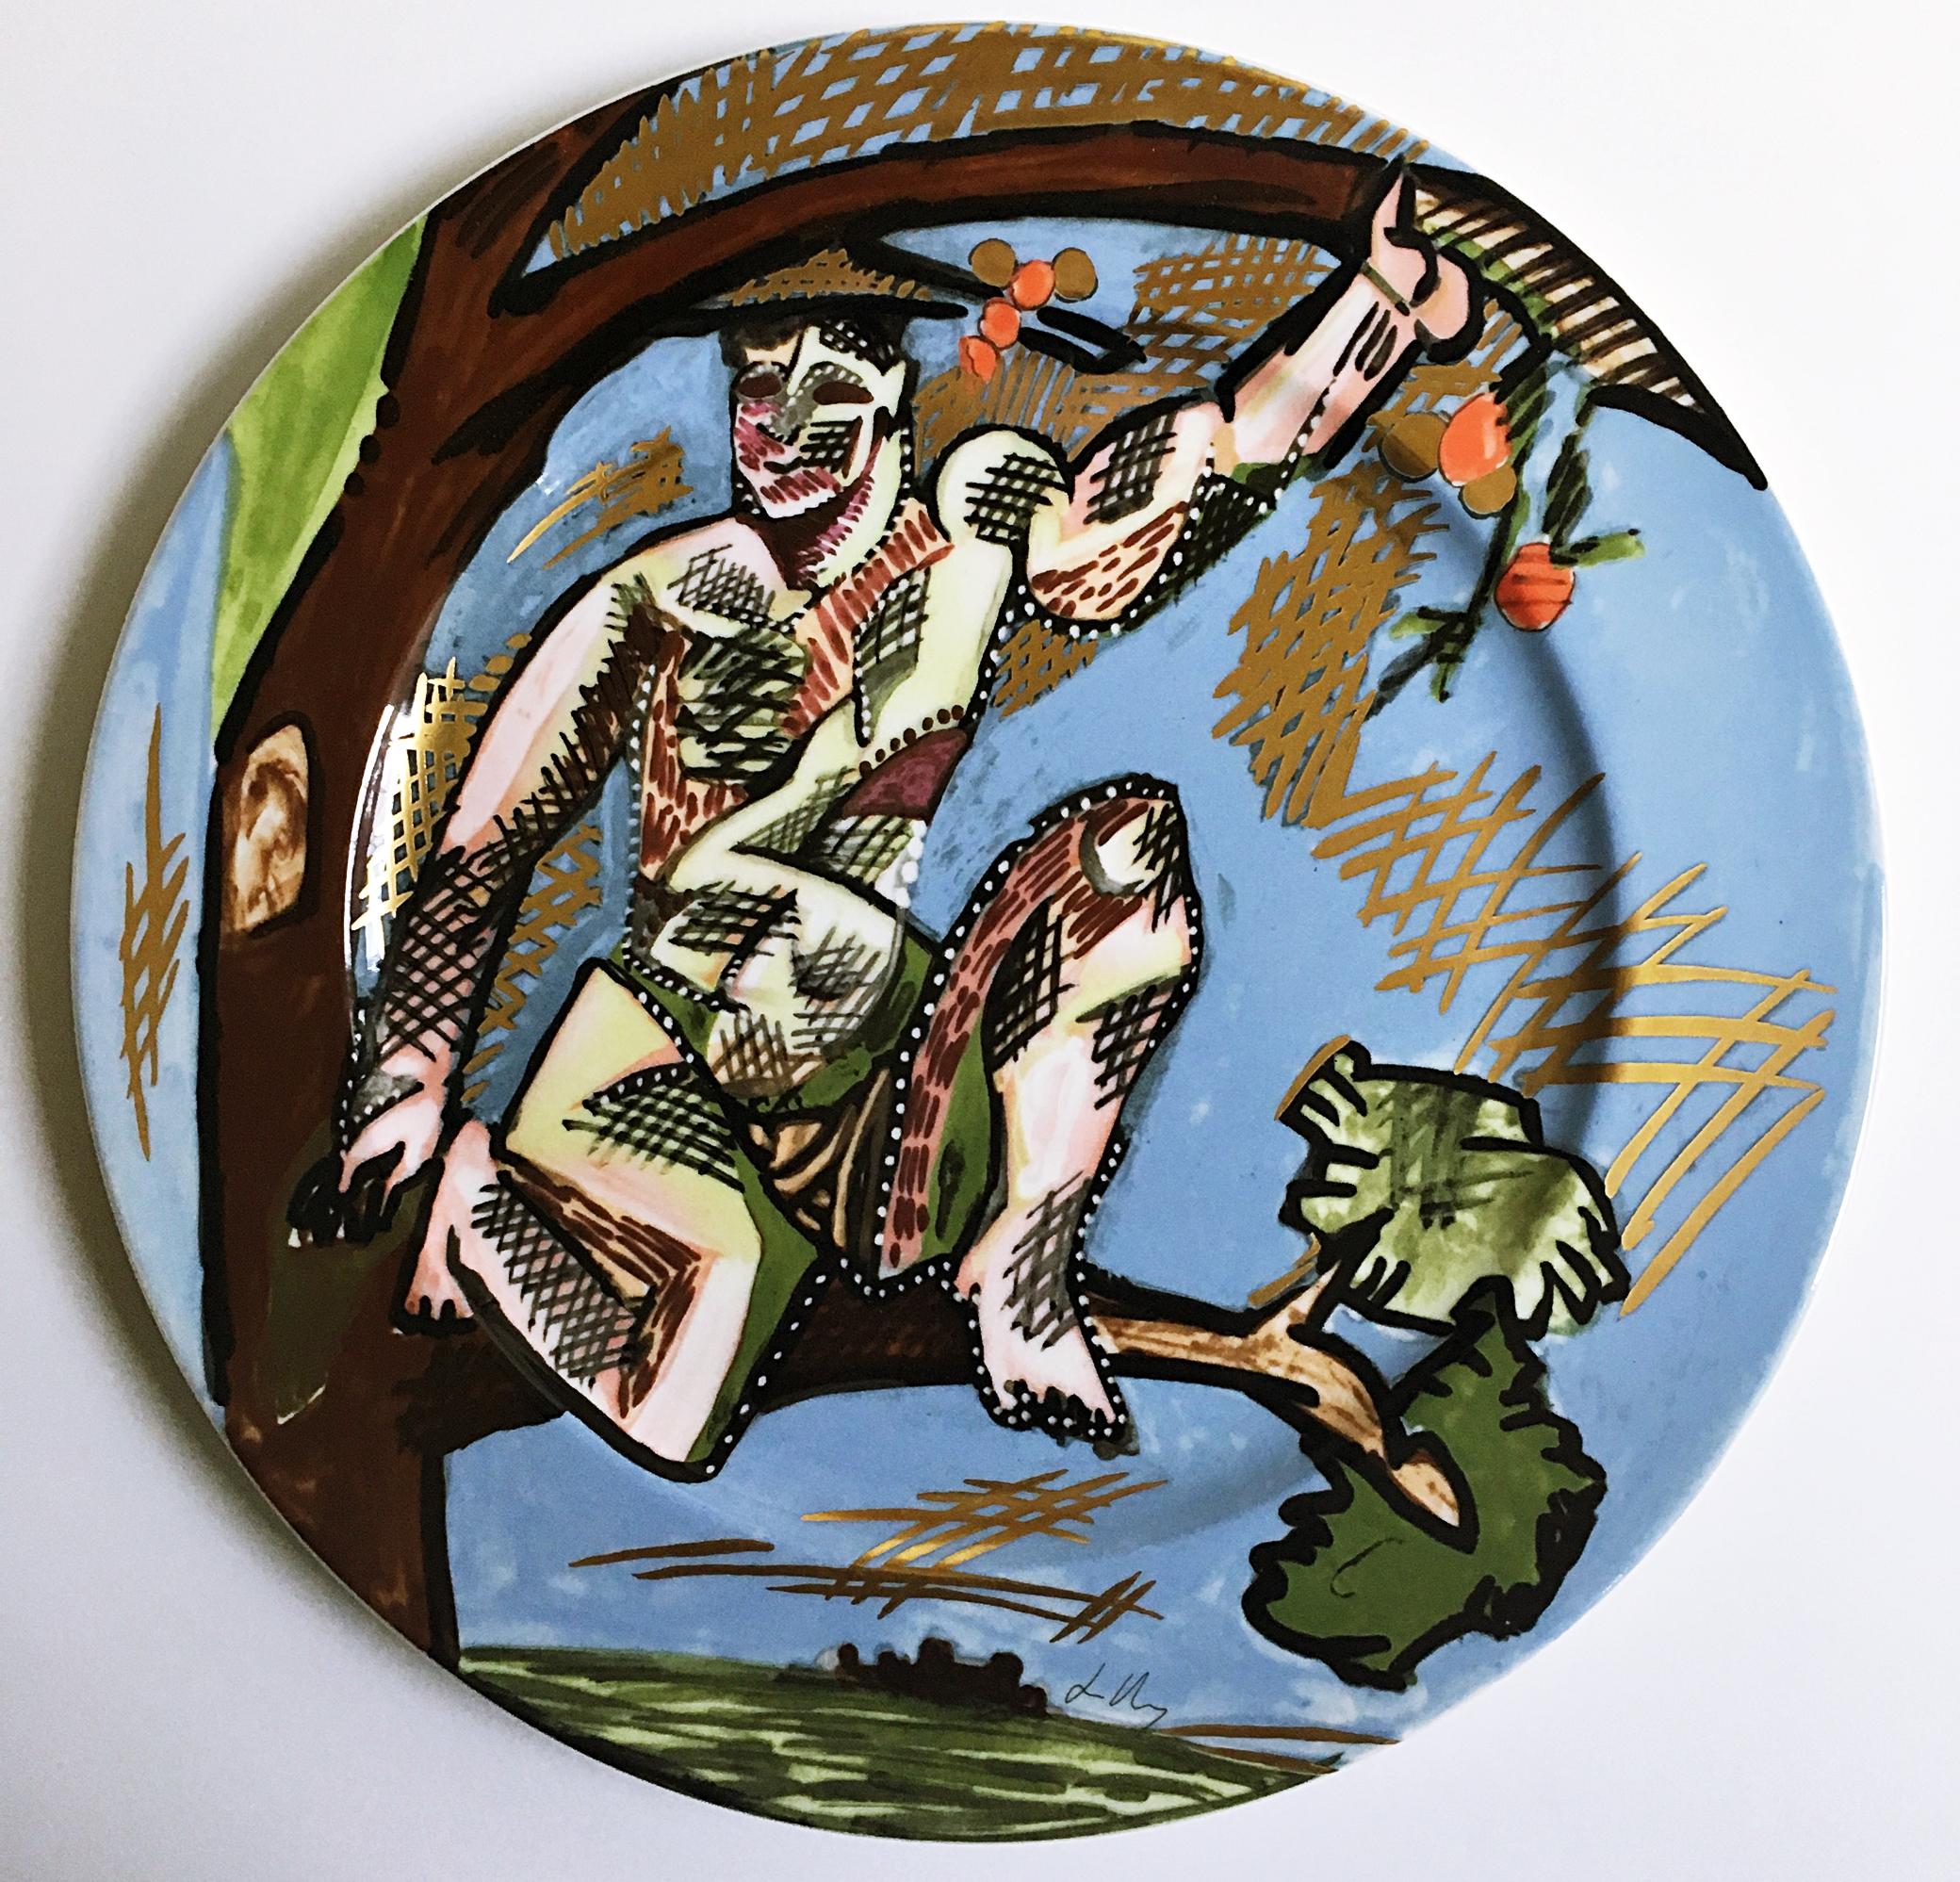 Kunstlerplatzteller Artists ceramic plate by Rosenthal, Inc - Mixed Media Art by Sandro Chia